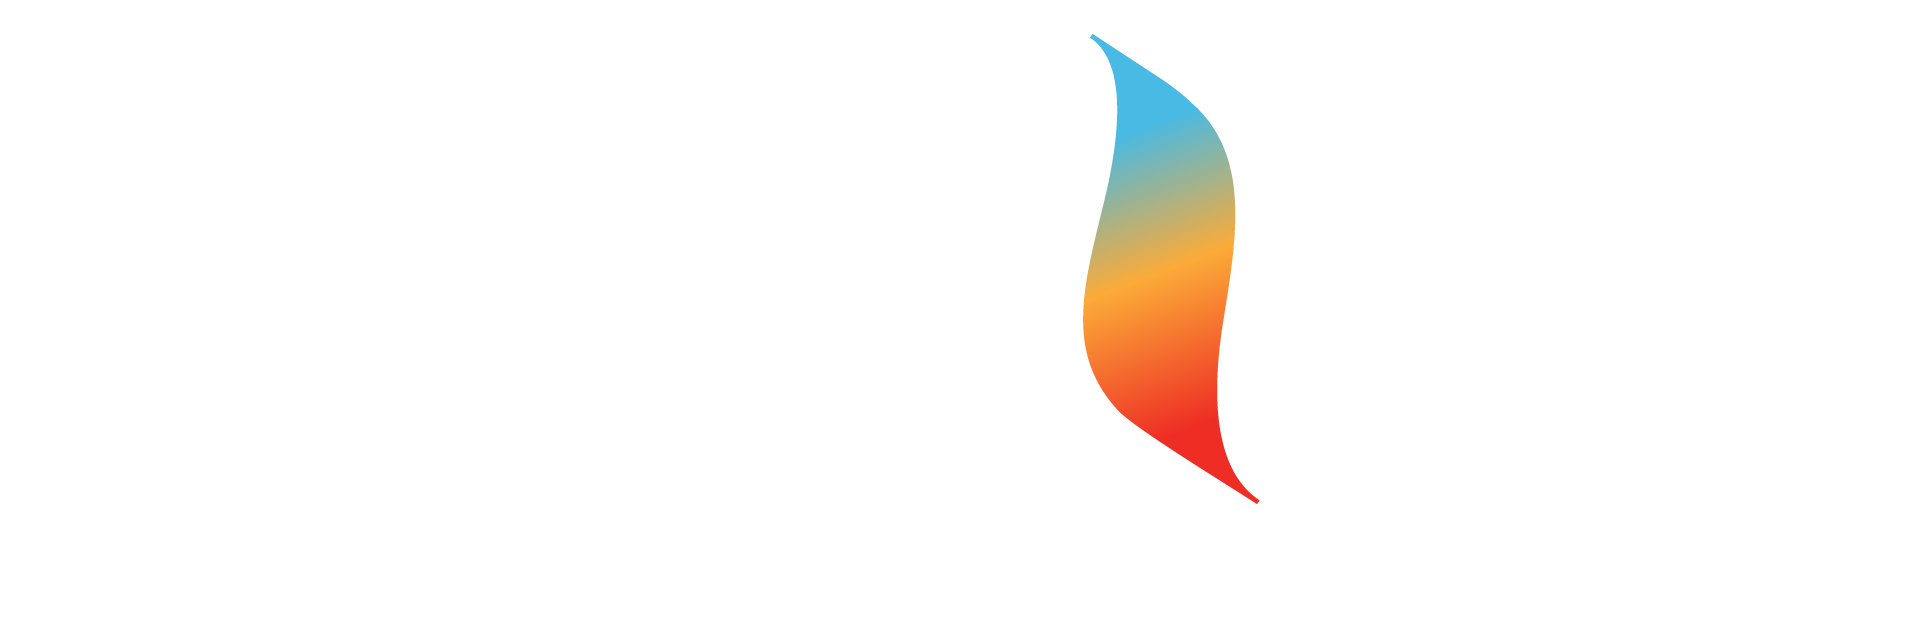 Thrive Sauna Studio